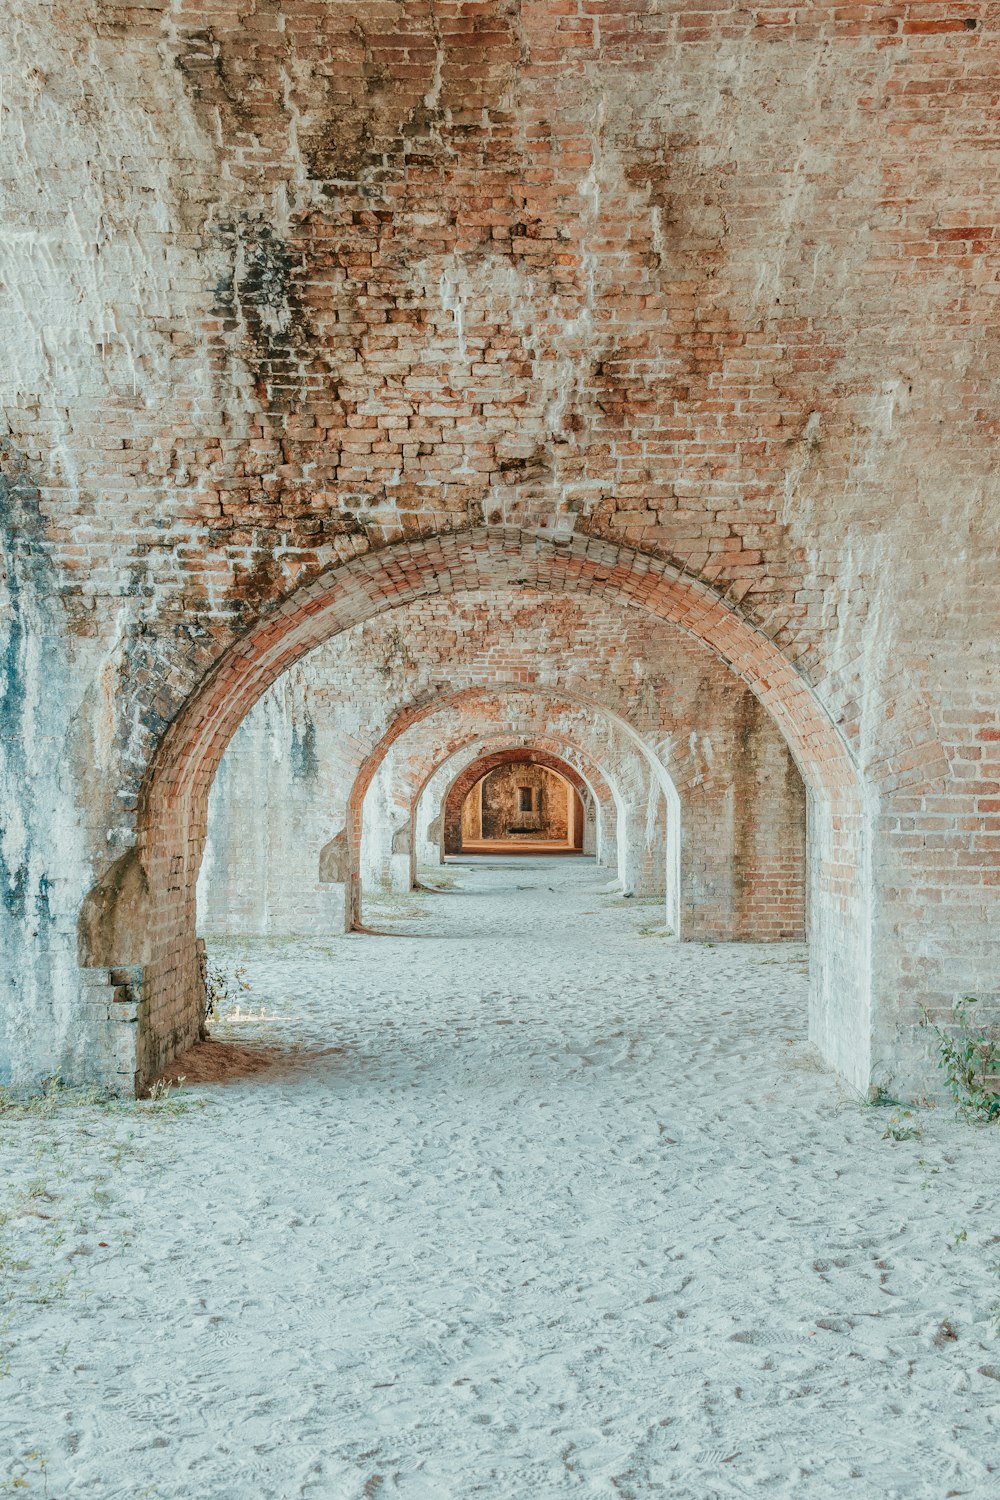 중간에 벤치가있는 벽돌 터널